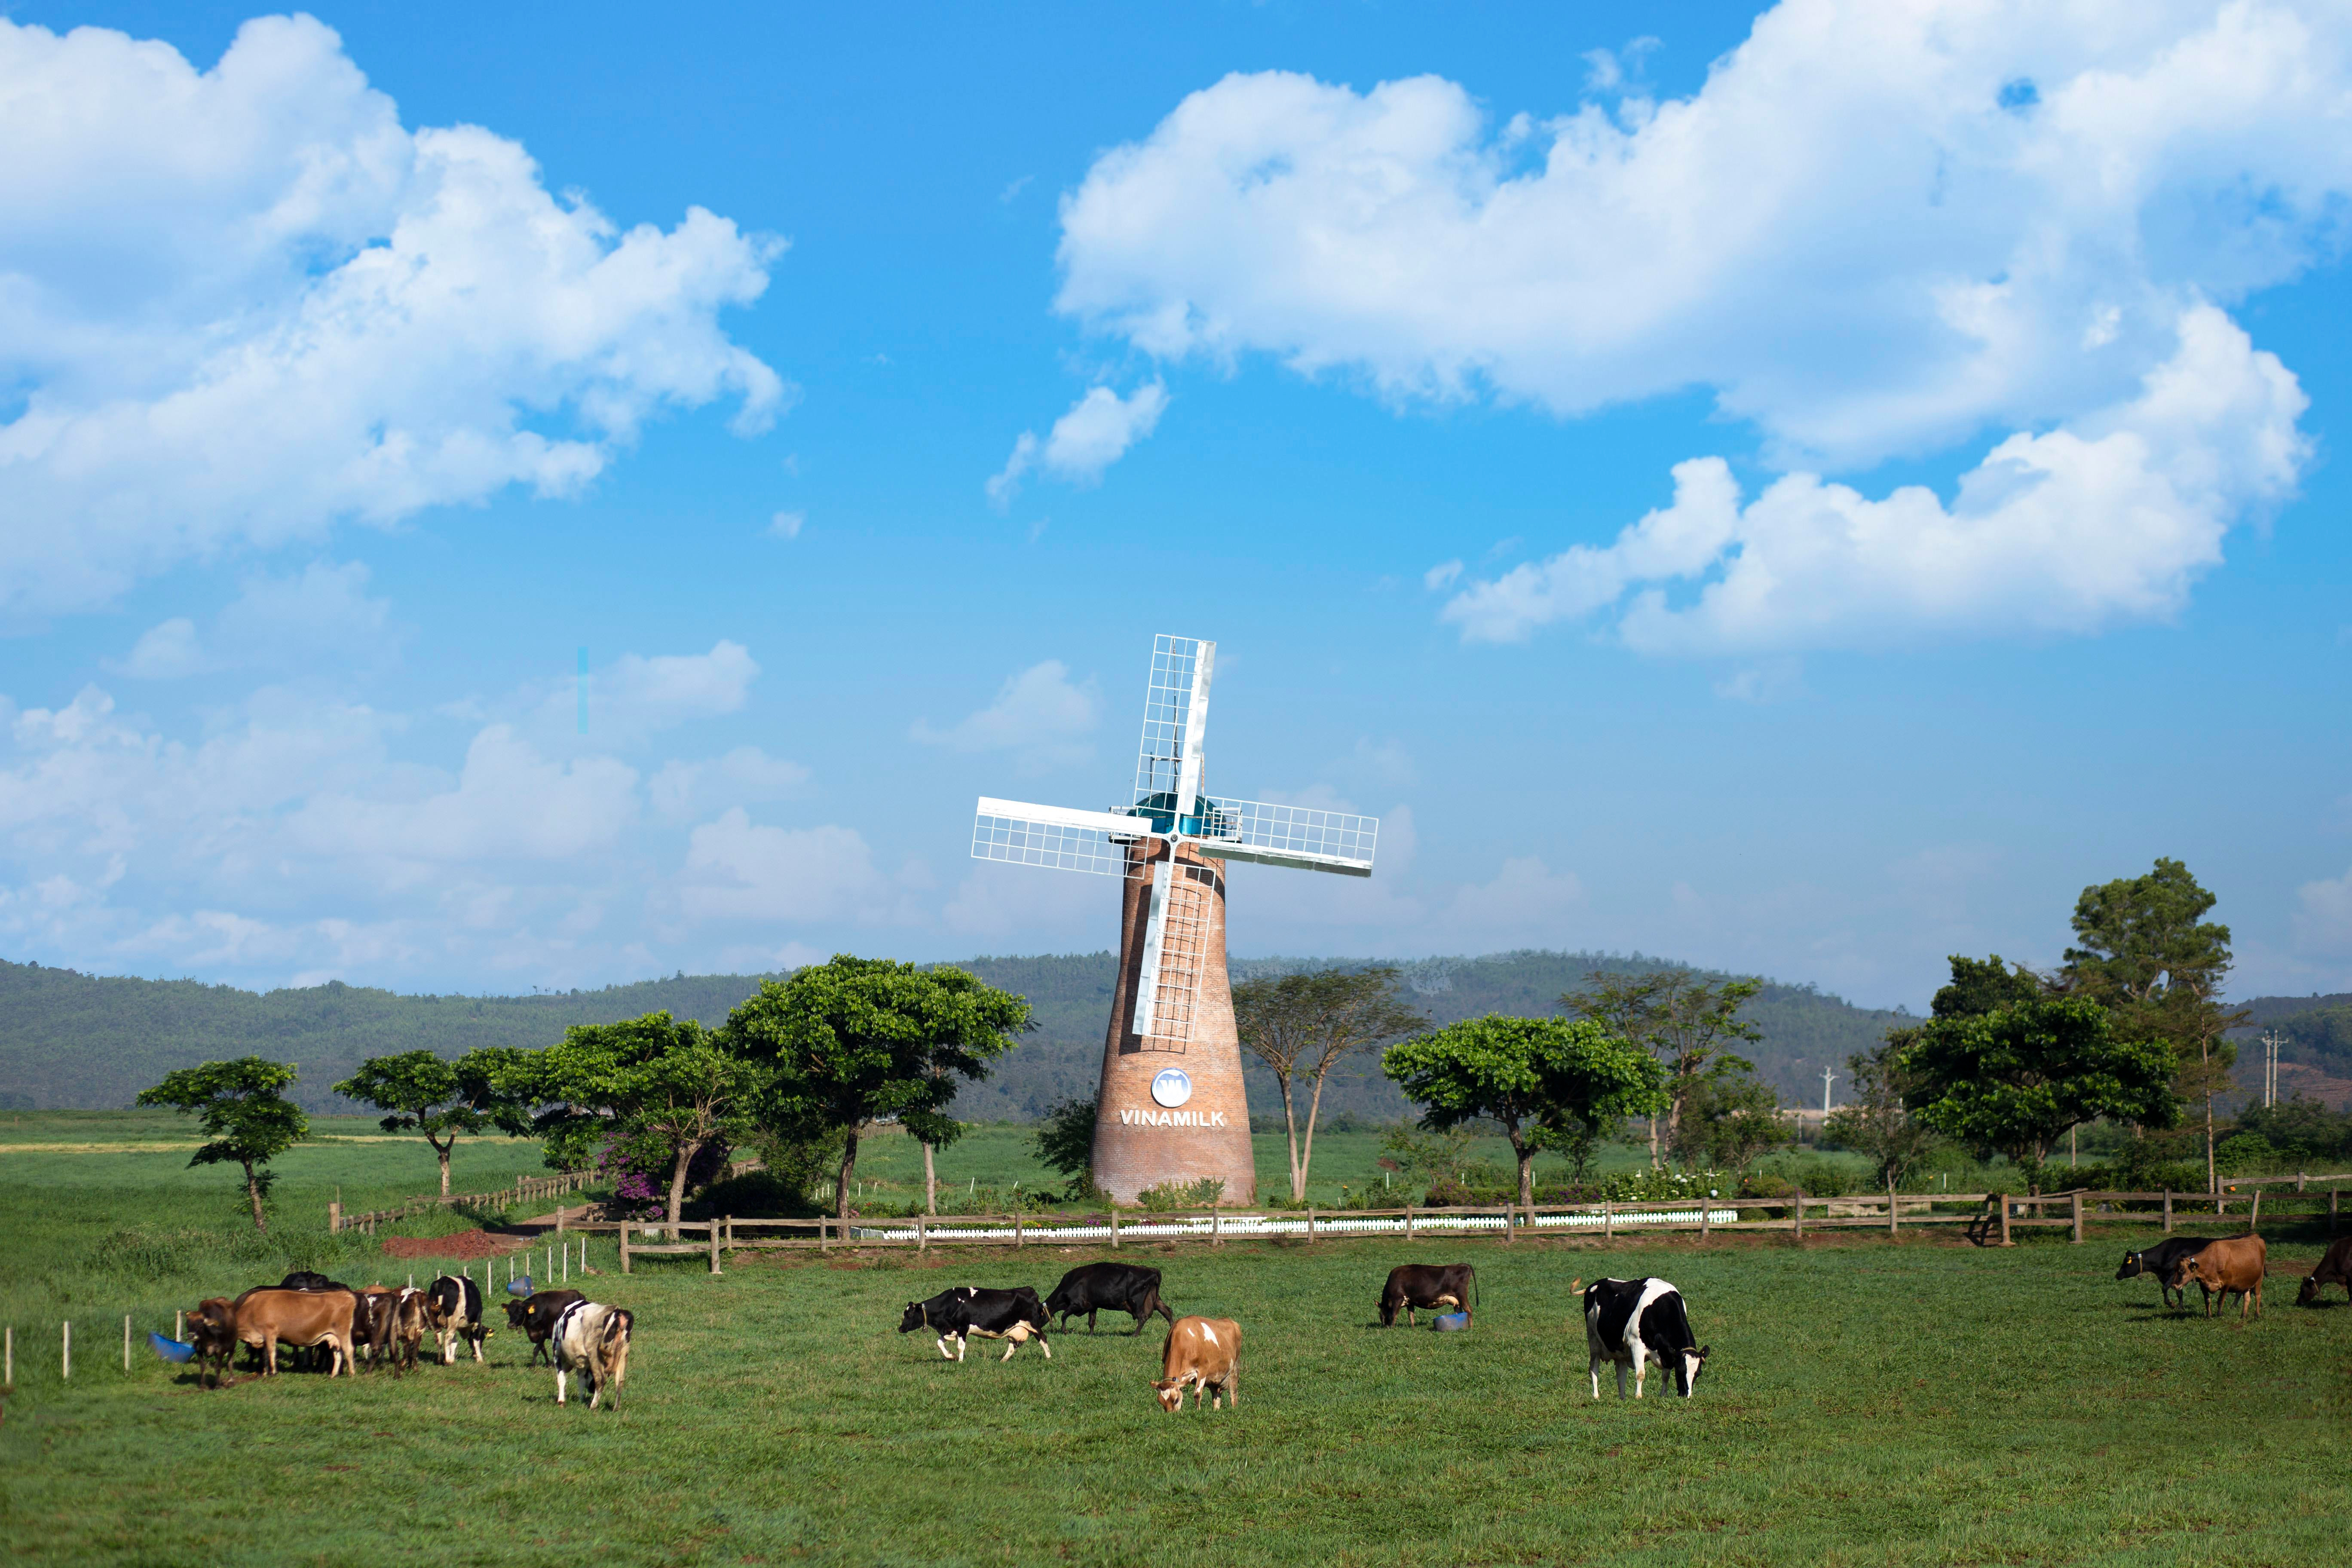 Trang trại bò sữa Organic đầu tiên của Việt Nam tại Đà Lạt được Vinamilk đầu tư với đàn bò sữa Organic được nhập khẩu.